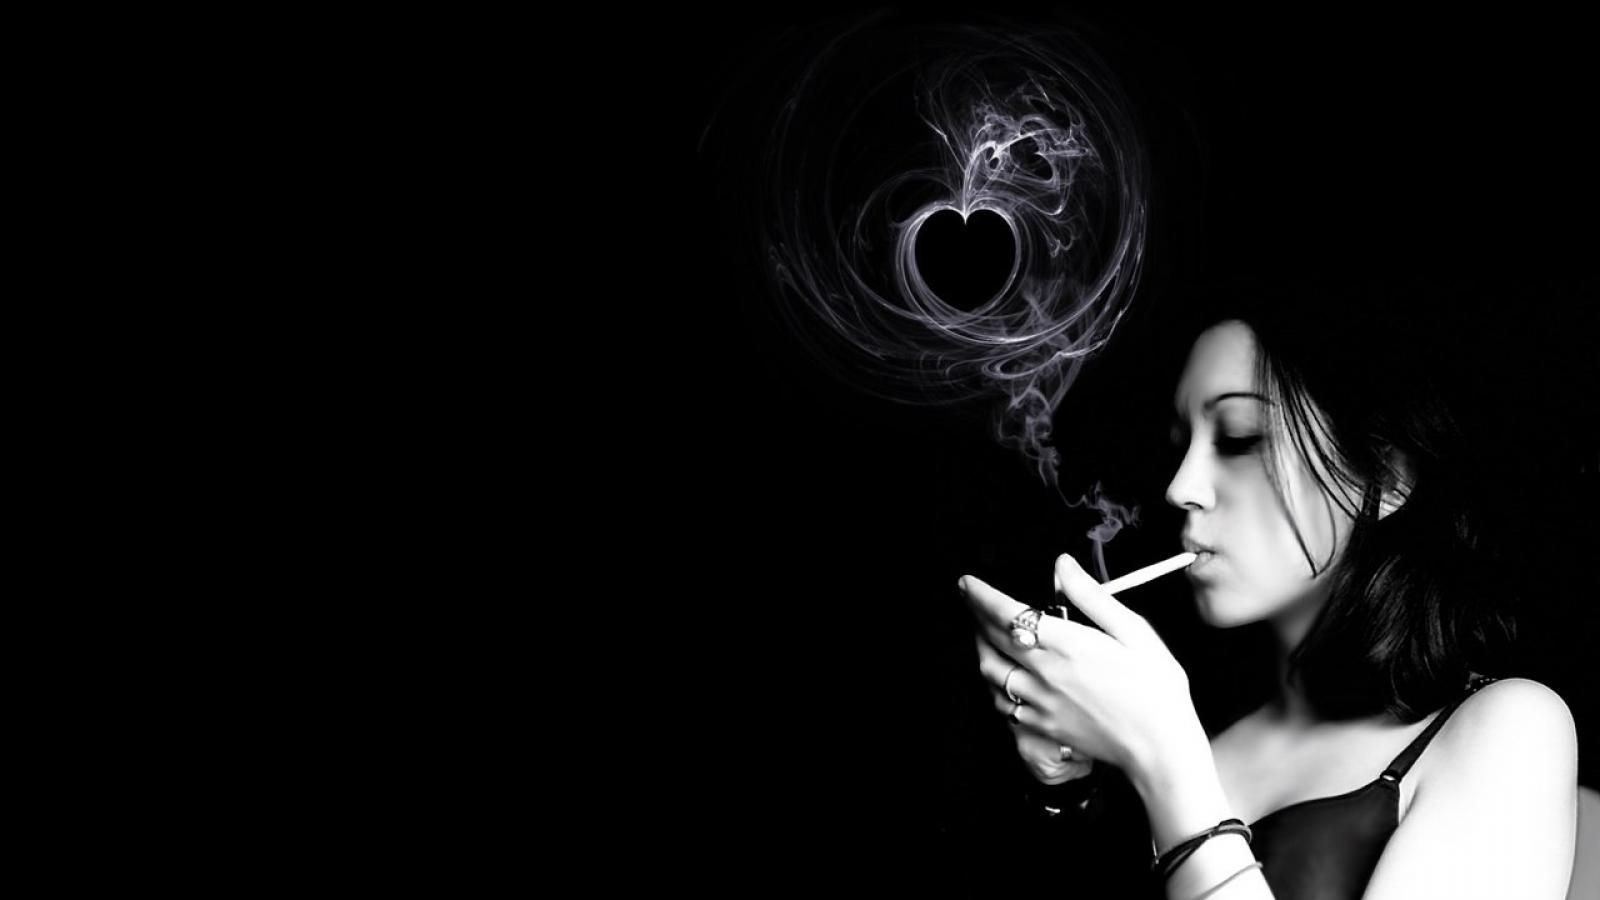 awesome smoke girl monochrome hd wallpaper - (#3671) - HQ Desktop ...